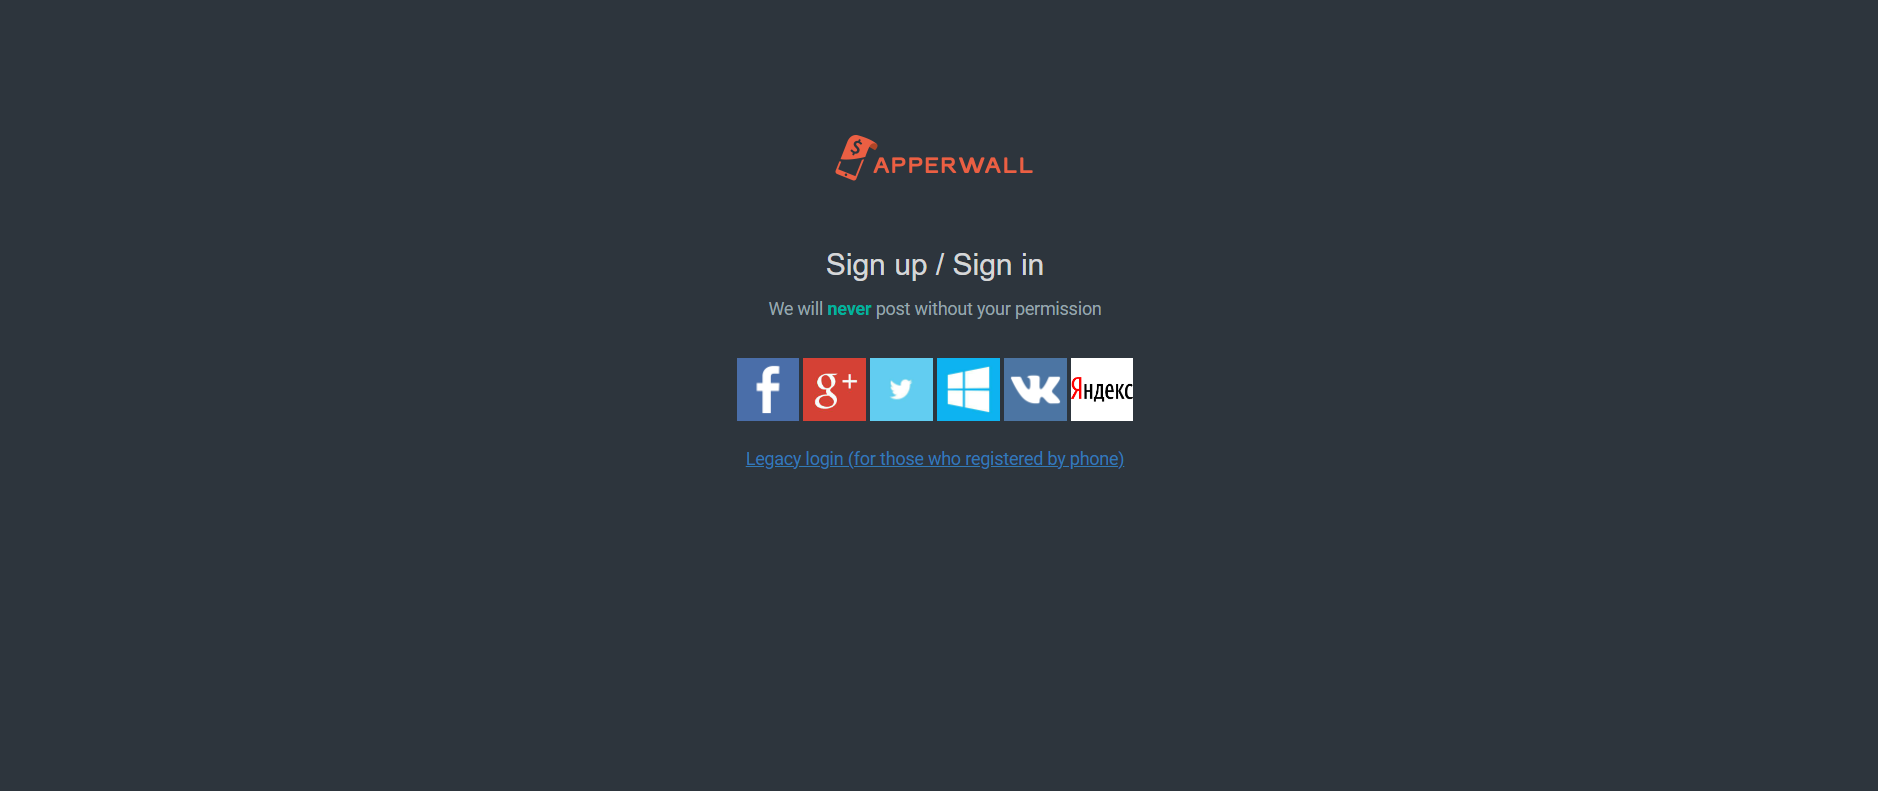 Apperwall website screenshot